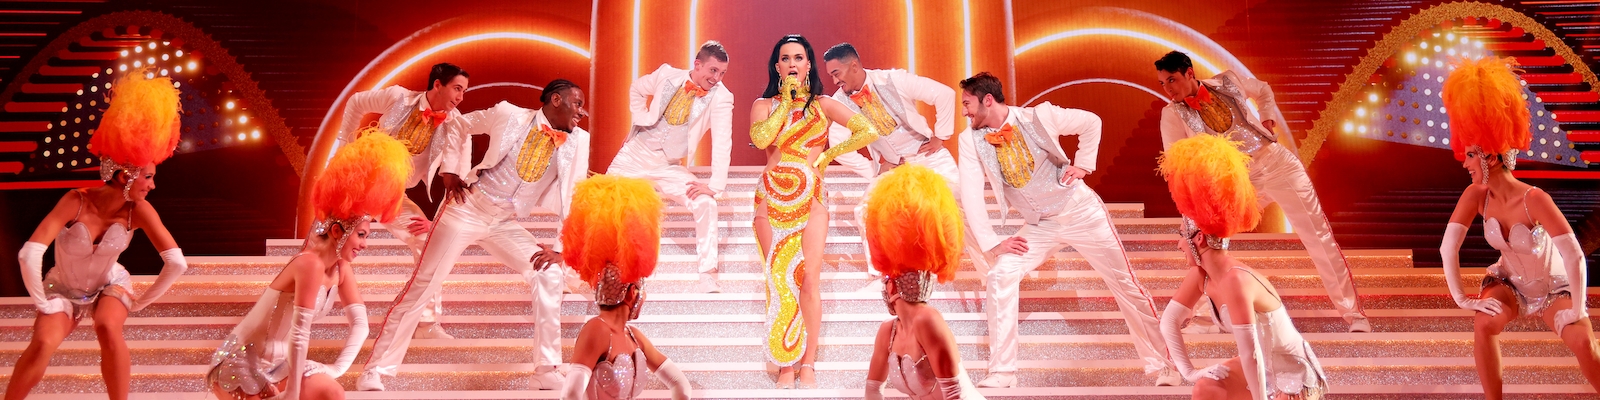 Katy Perry Play Vegas Residency